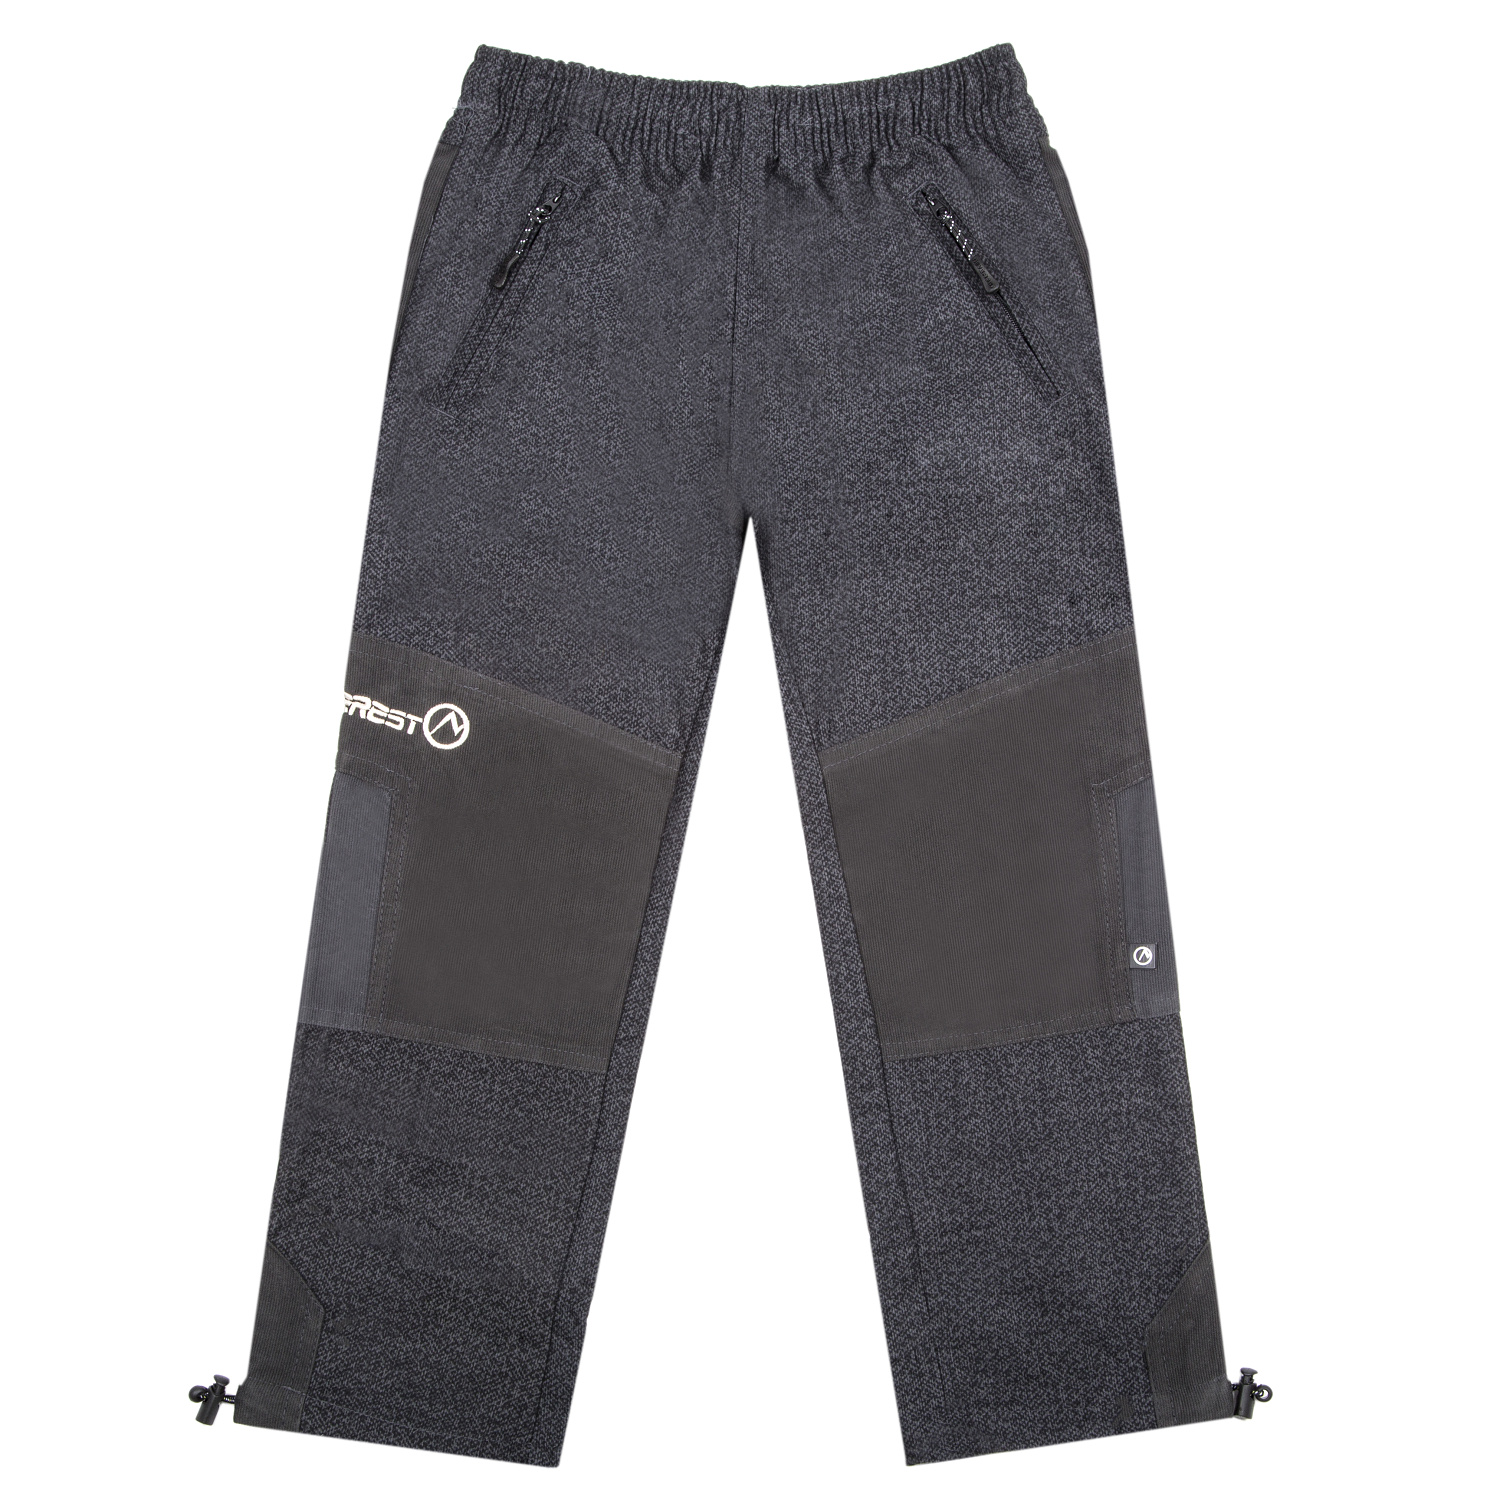 Chlapecké outdoorová kalhoty - NEVEREST F- 920cc, šedá Barva: Šedá, Velikost: 110